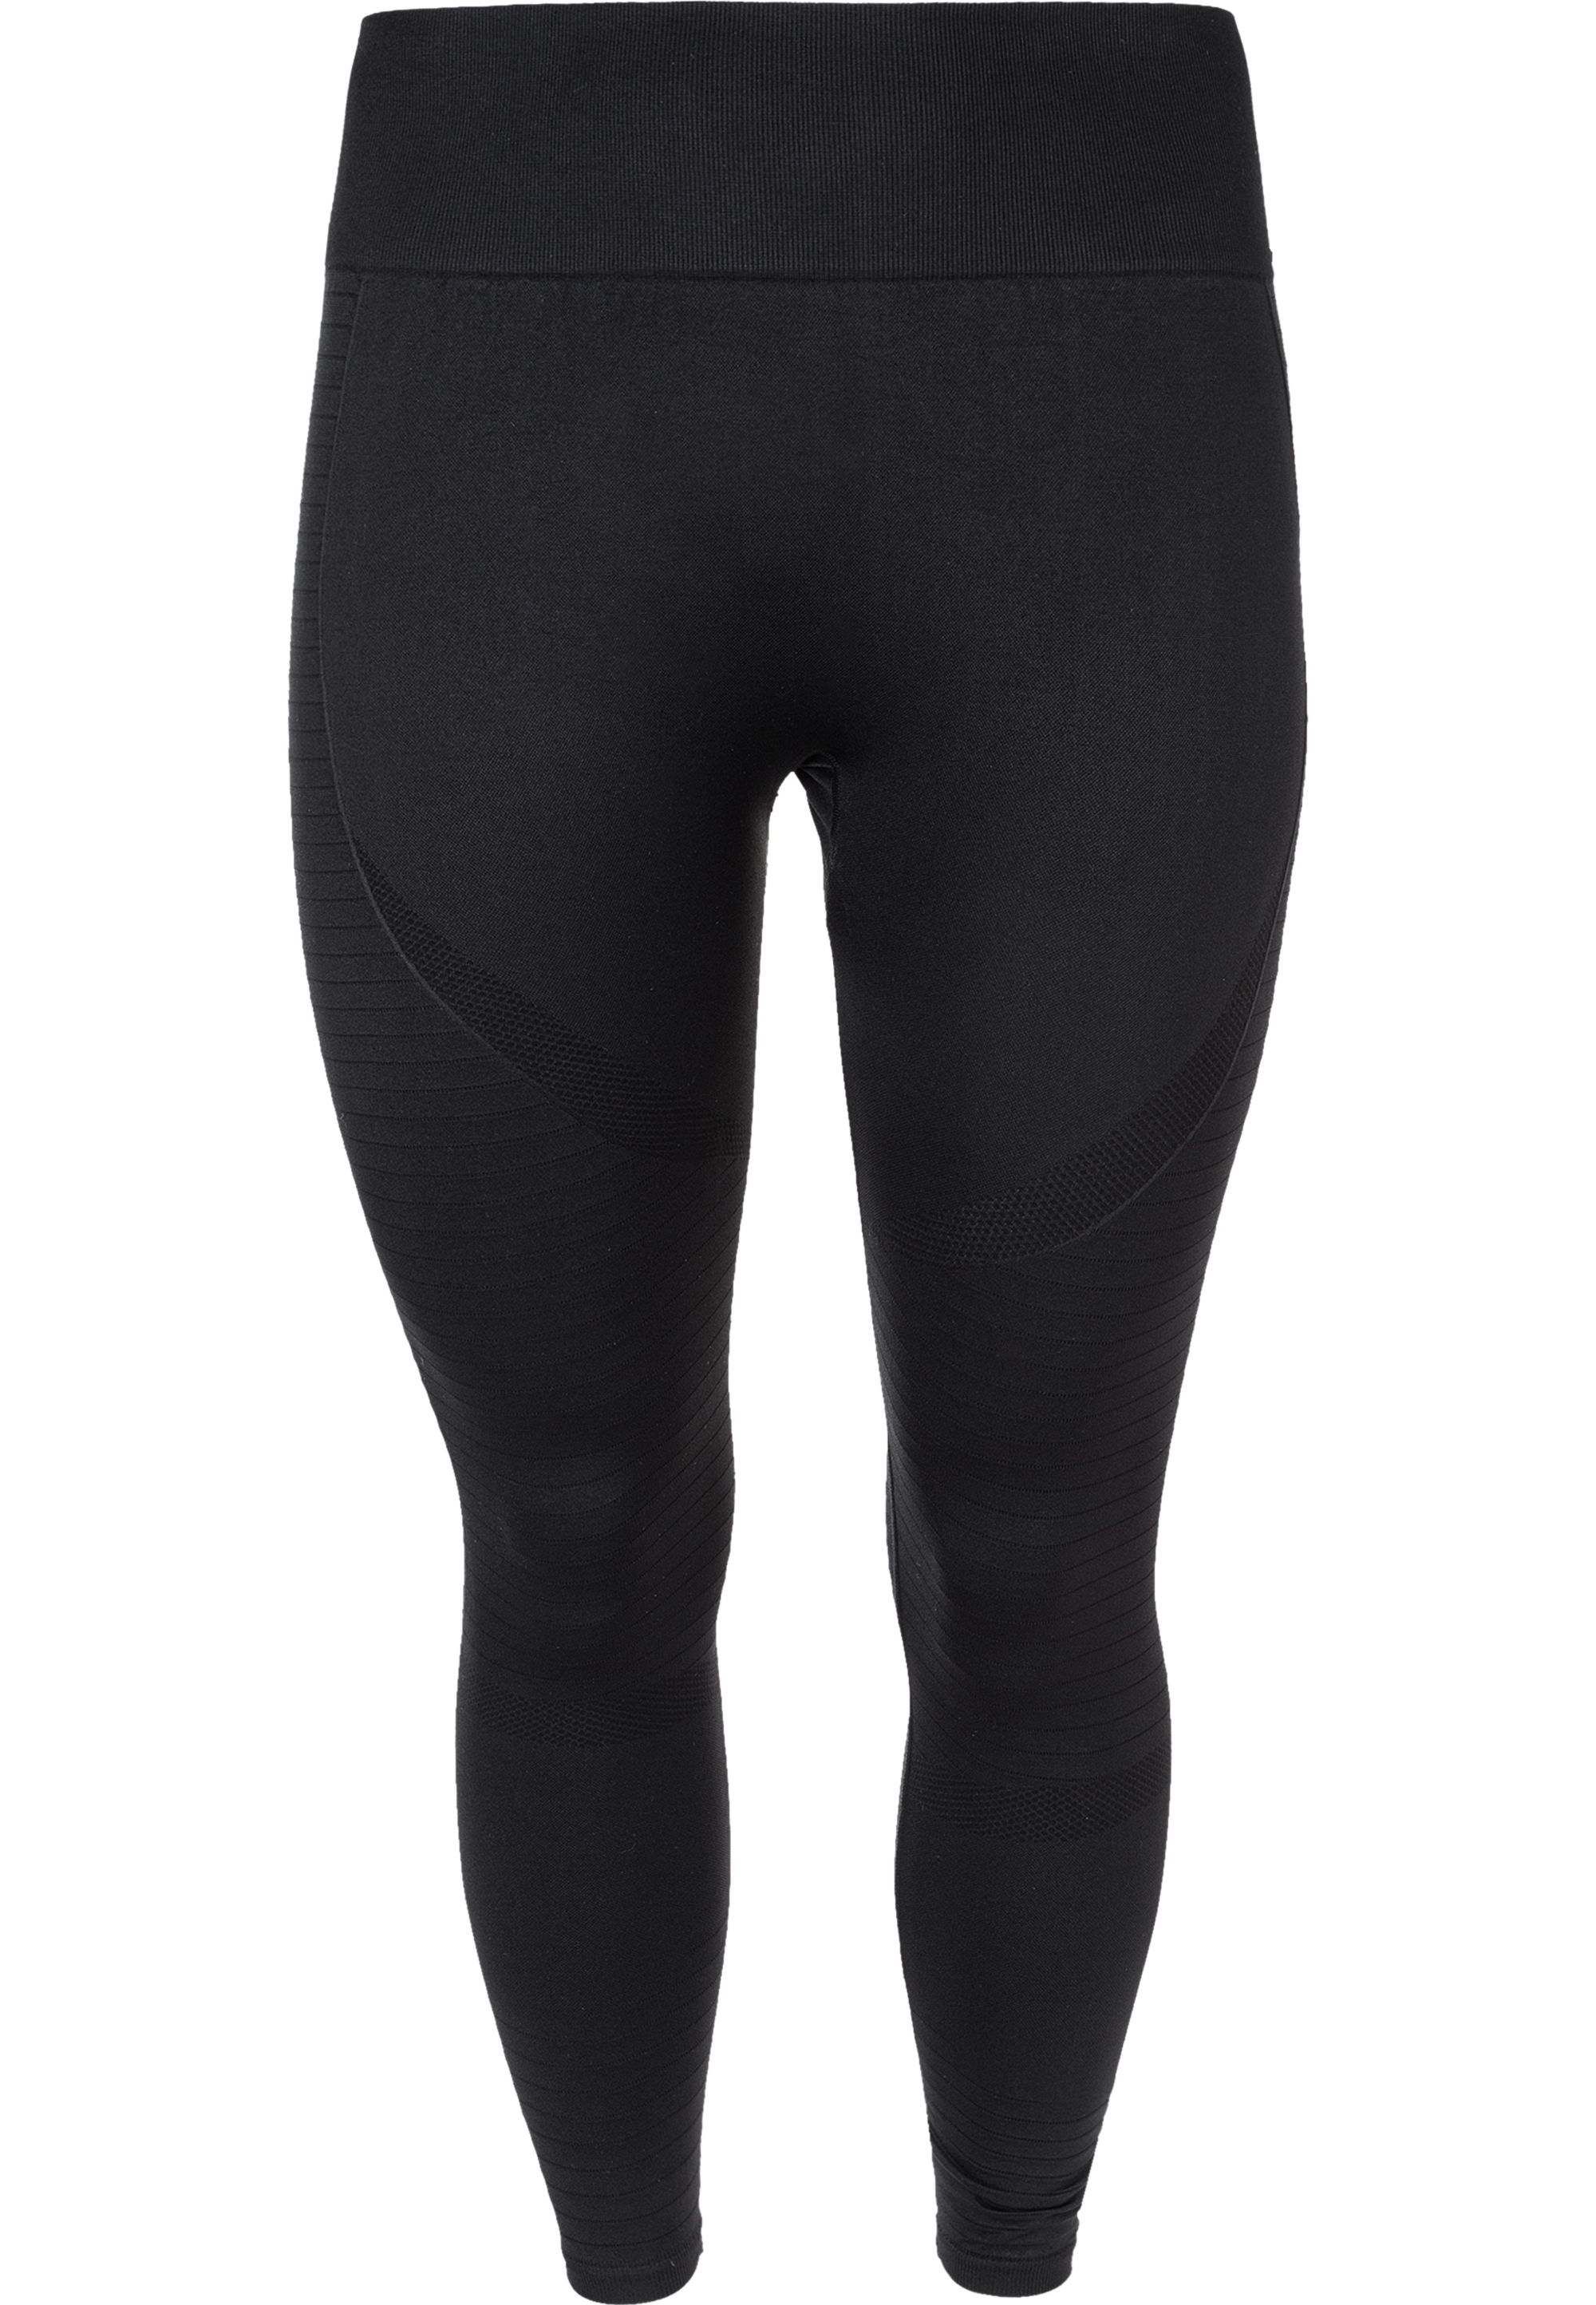 Спортивные брюки Endurance Q Tights Cerine, цвет 1001 Black